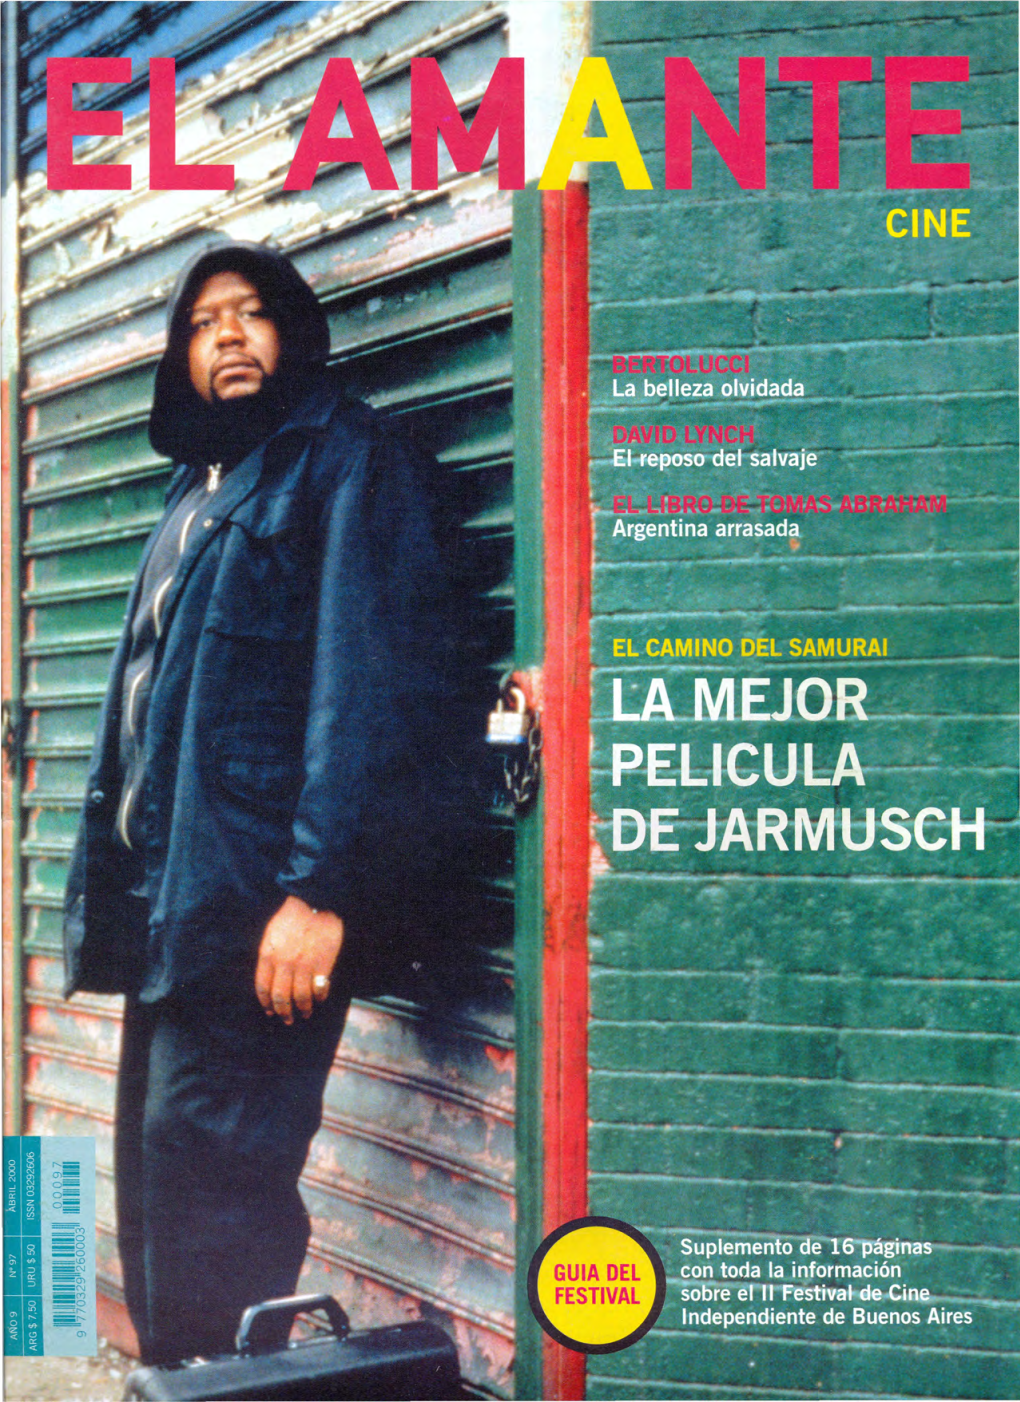 New Film Video Club Sábado 22: Es Arte (1993, Dirigida Por Pie- Ciclo "Un Director Por Mes", Lunes a Las 20